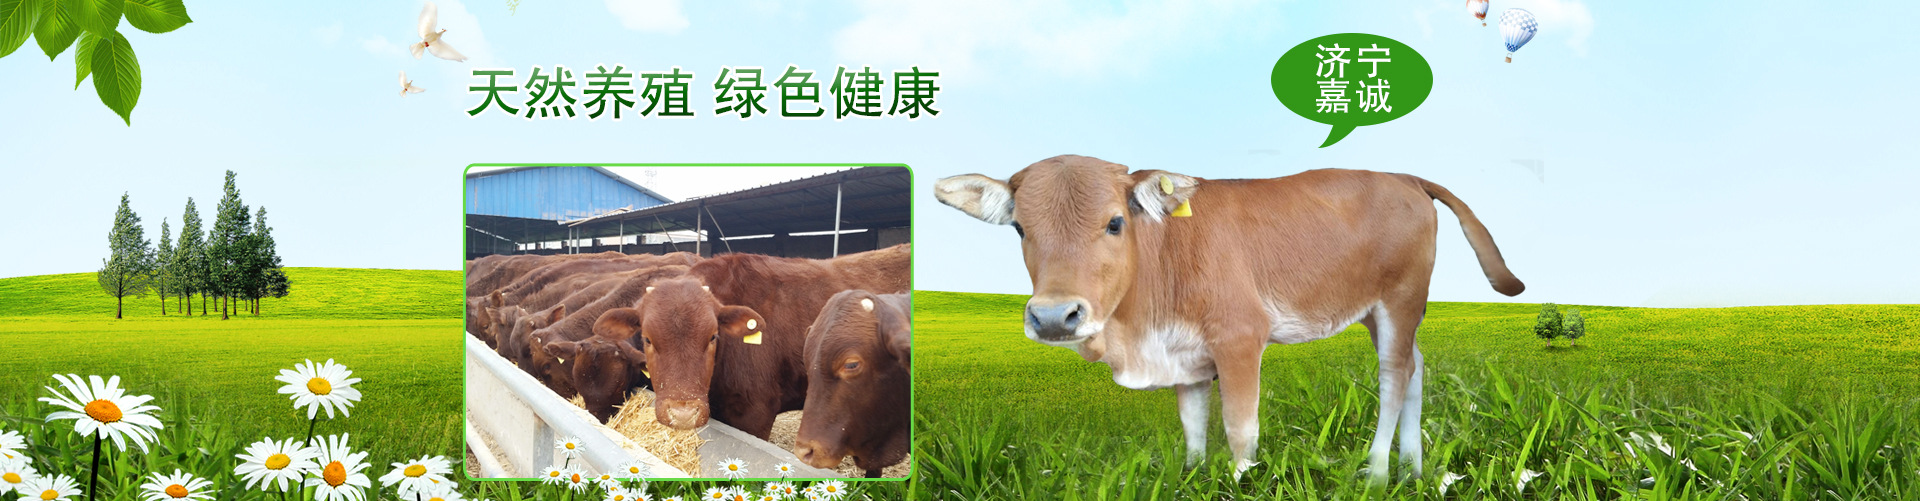 西门塔尔牛致富好项目 出售各种肉牛犊 养牛基地种类多品种全嘉诚示例图1